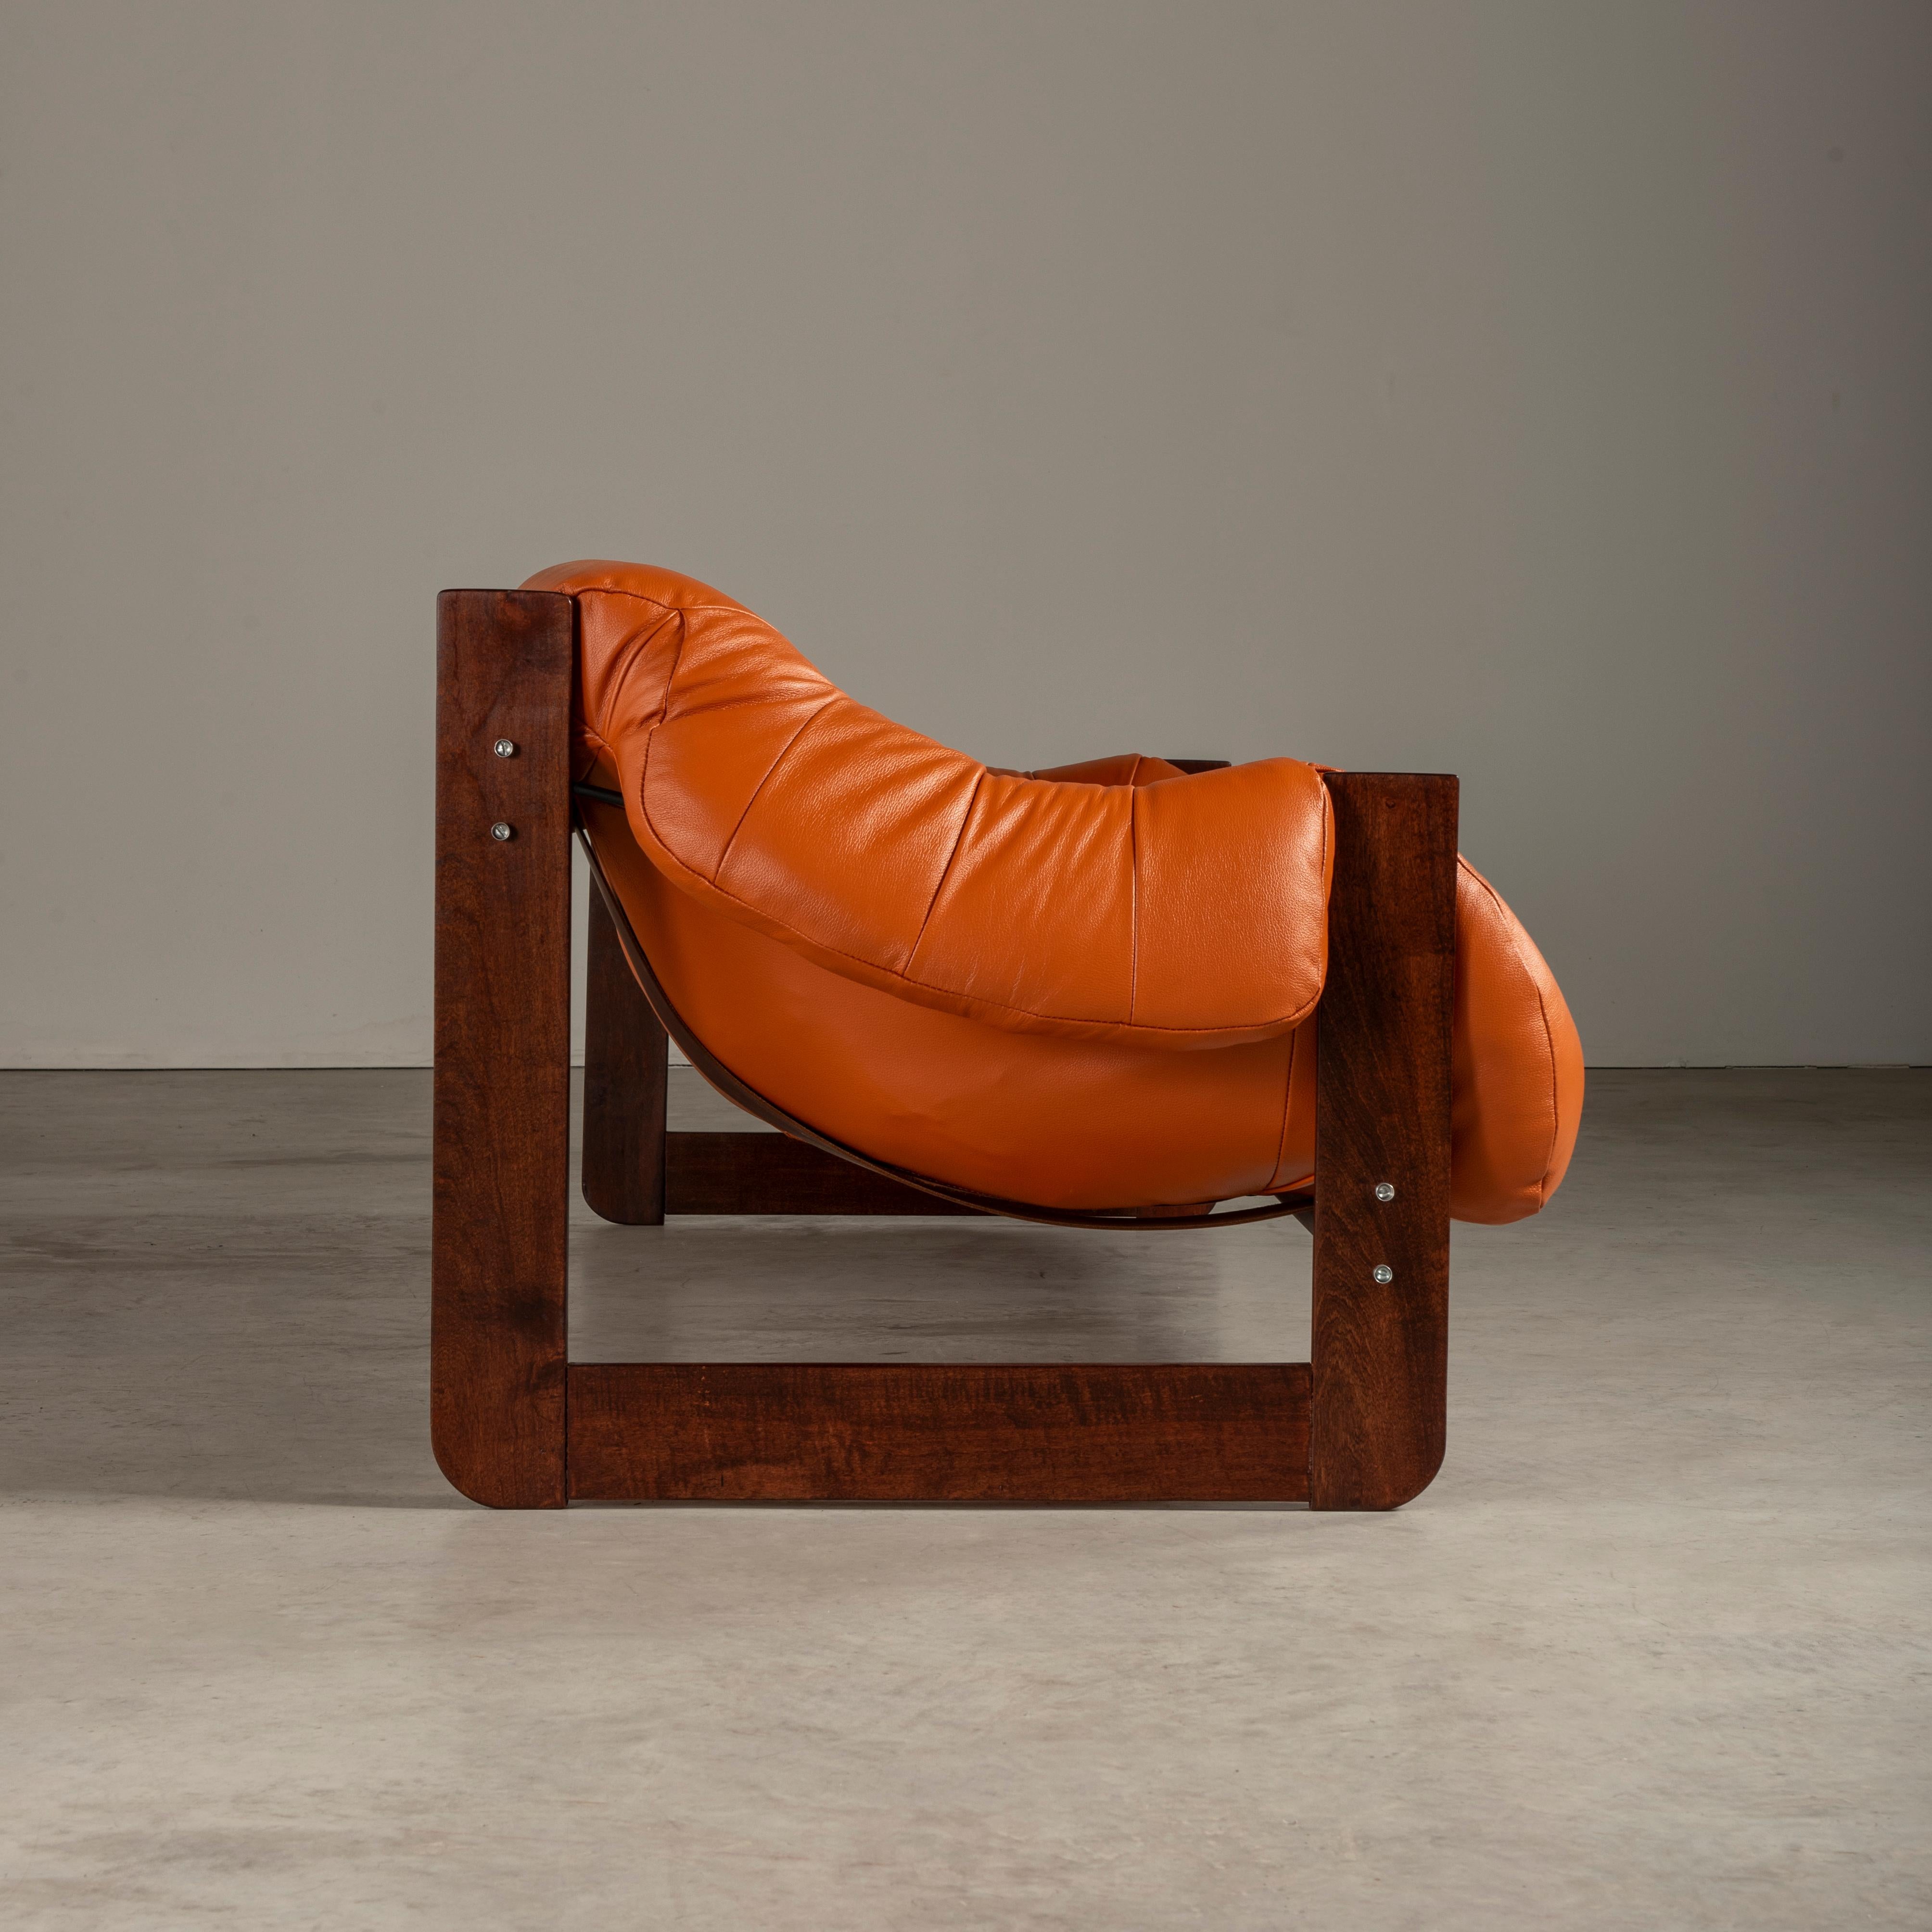 Le canapé MP-97 conçu par Percival Lafer est un meuble d'exception. Ce canapé est constitué d'un cadre en bois massif et d'un revêtement en cuir de haute qualité dans une superbe nuance d'orange. Il offre un confort et un style inégalés. Le design